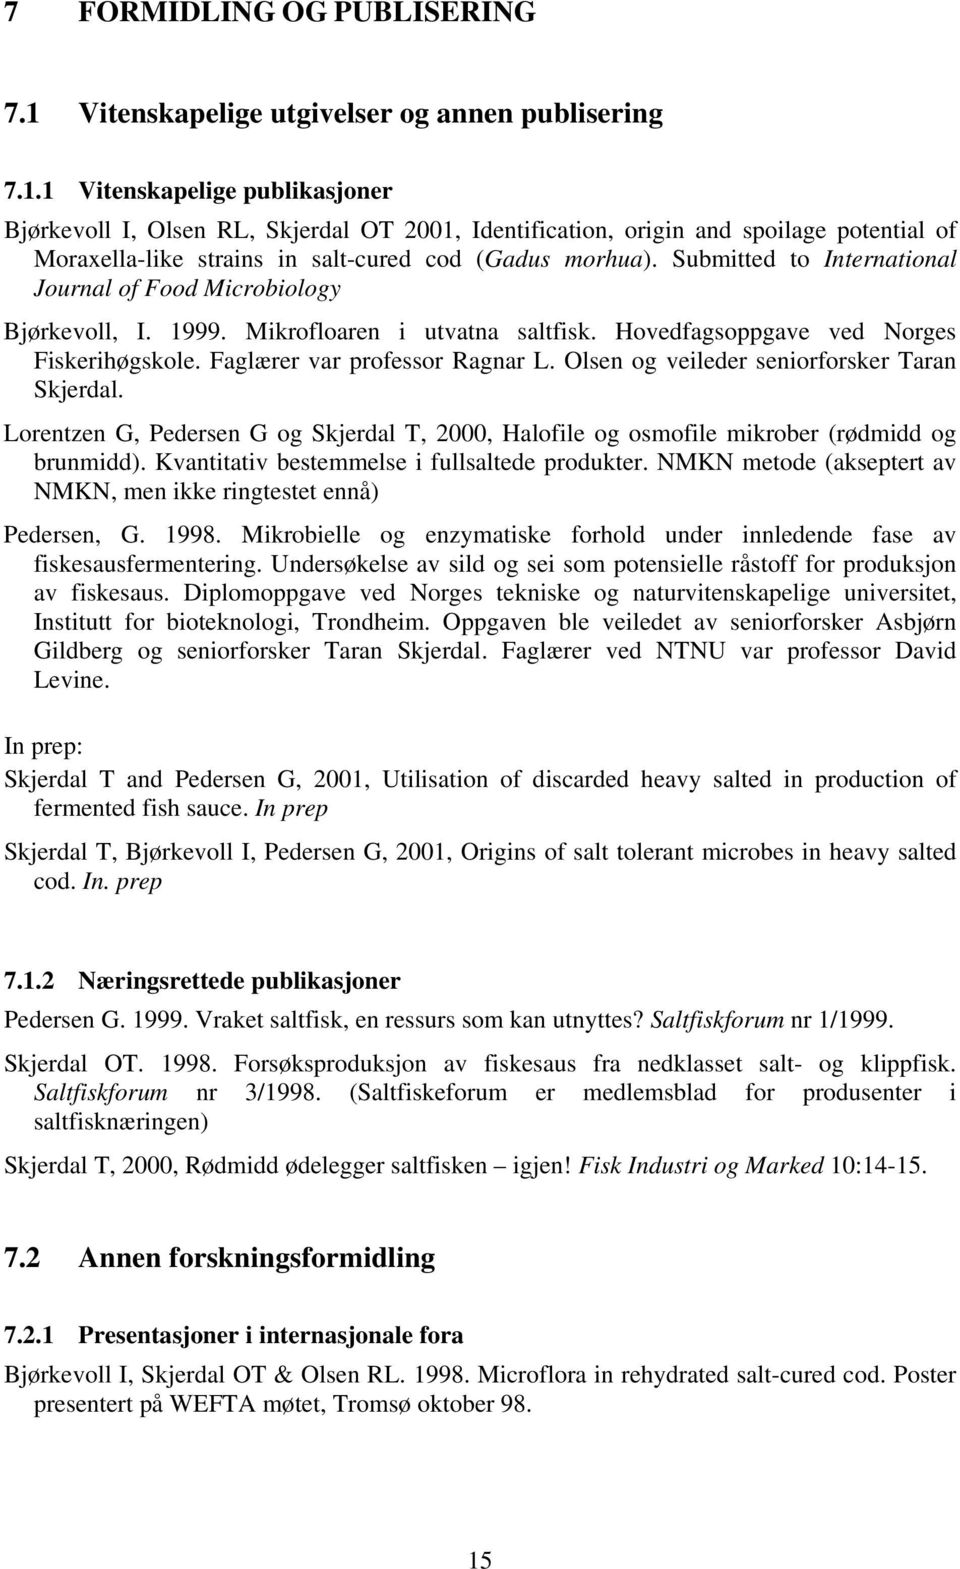 1 Vitenskapelige publikasjoner Bjørkevoll I, Olsen RL, Skjerdal OT 2001, Identification, origin and spoilage potential of Moraxella-like strains in salt-cured cod (Gadus morhua).